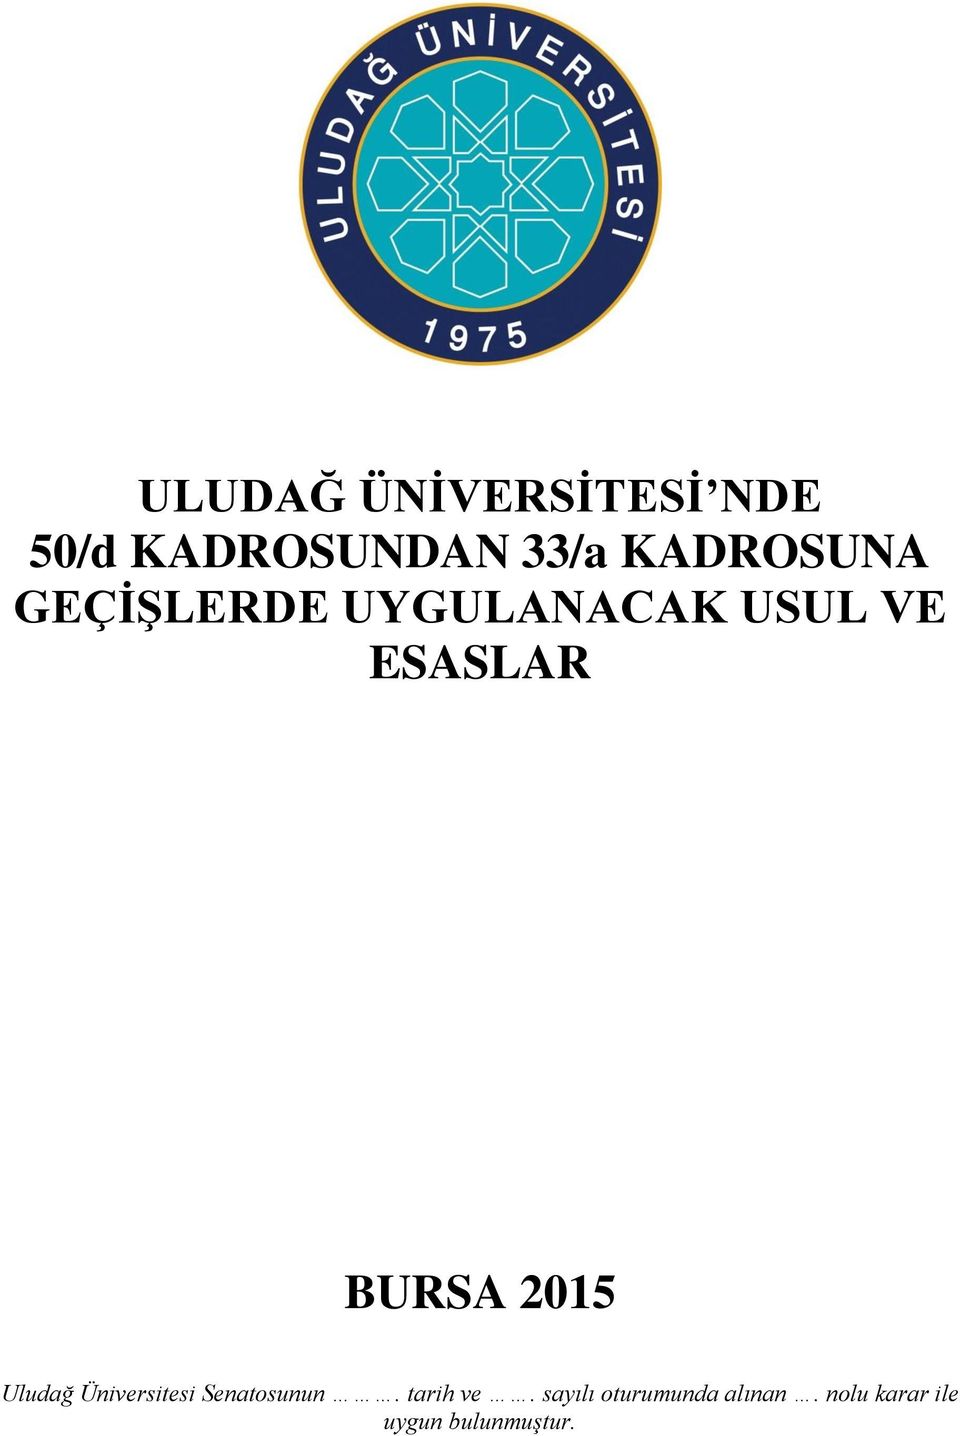 BURSA 2015 Uludağ Üniversitesi Senatosunun.